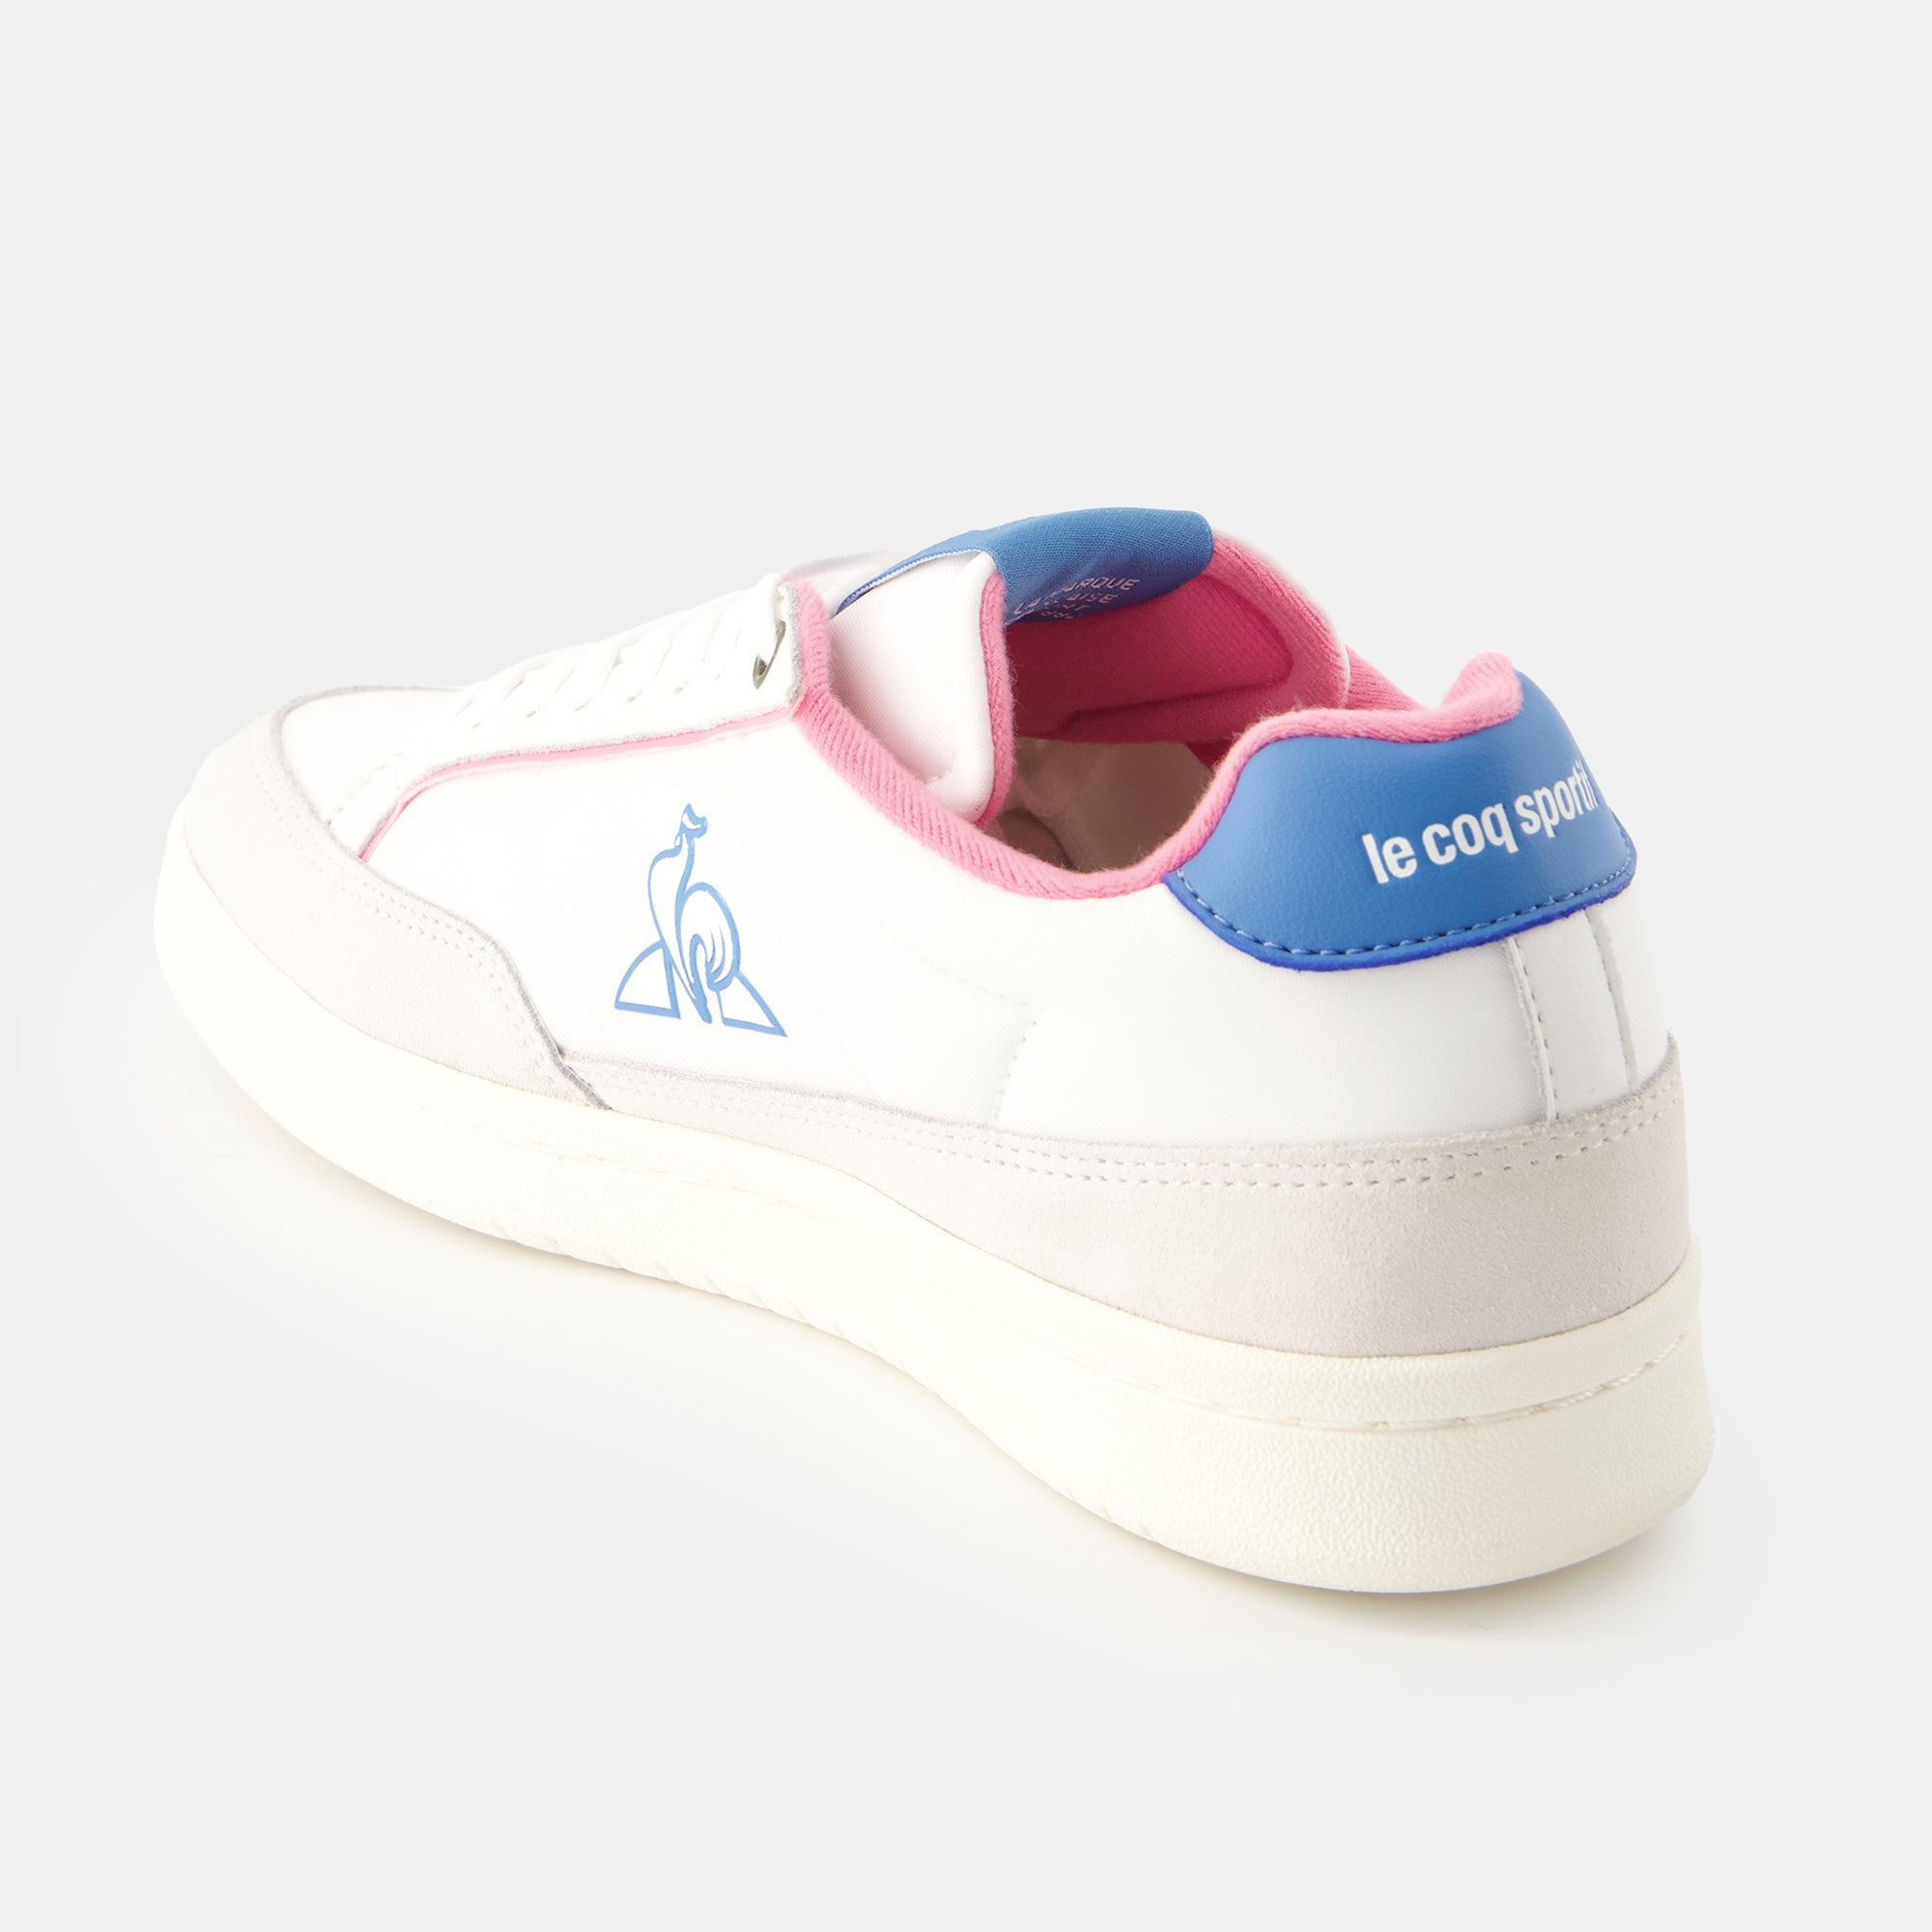 2410788-NOAH_2 W optical white/ fuschia pink  | Shoes NOAH_2 W for women